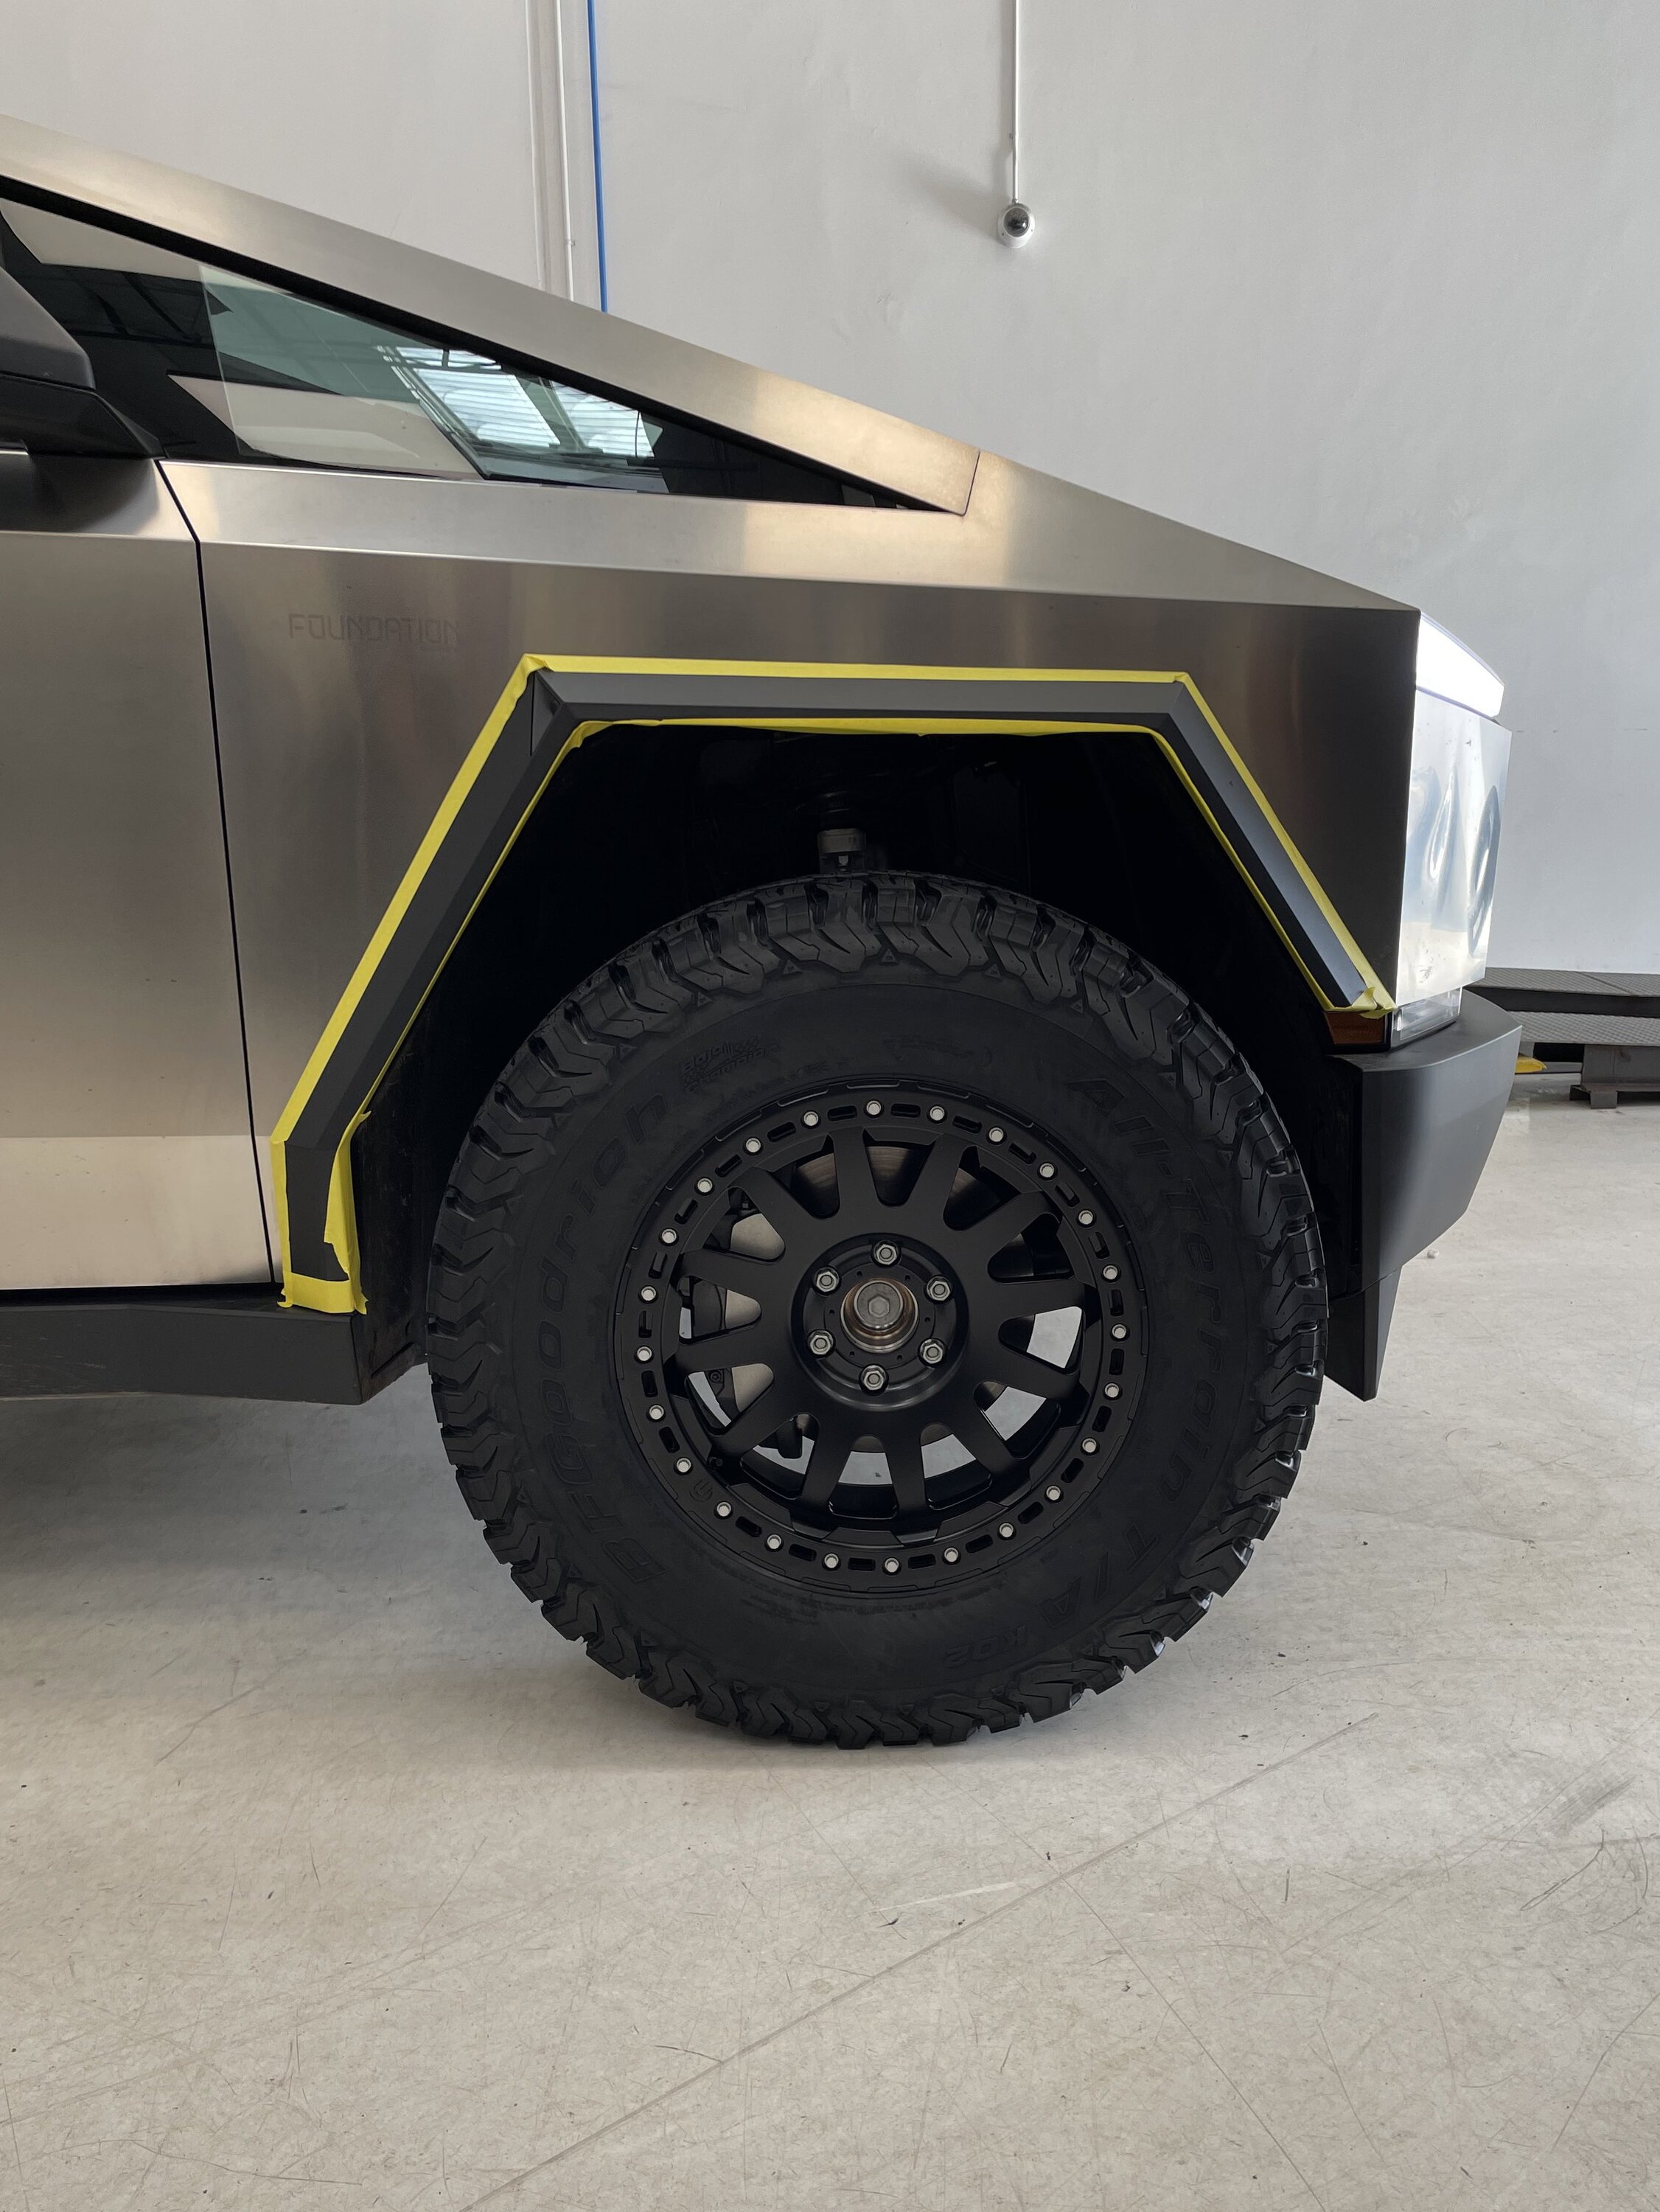 37%22 inch 37s tires on Cybertruck Tesla aftermarket wheels.jpeg